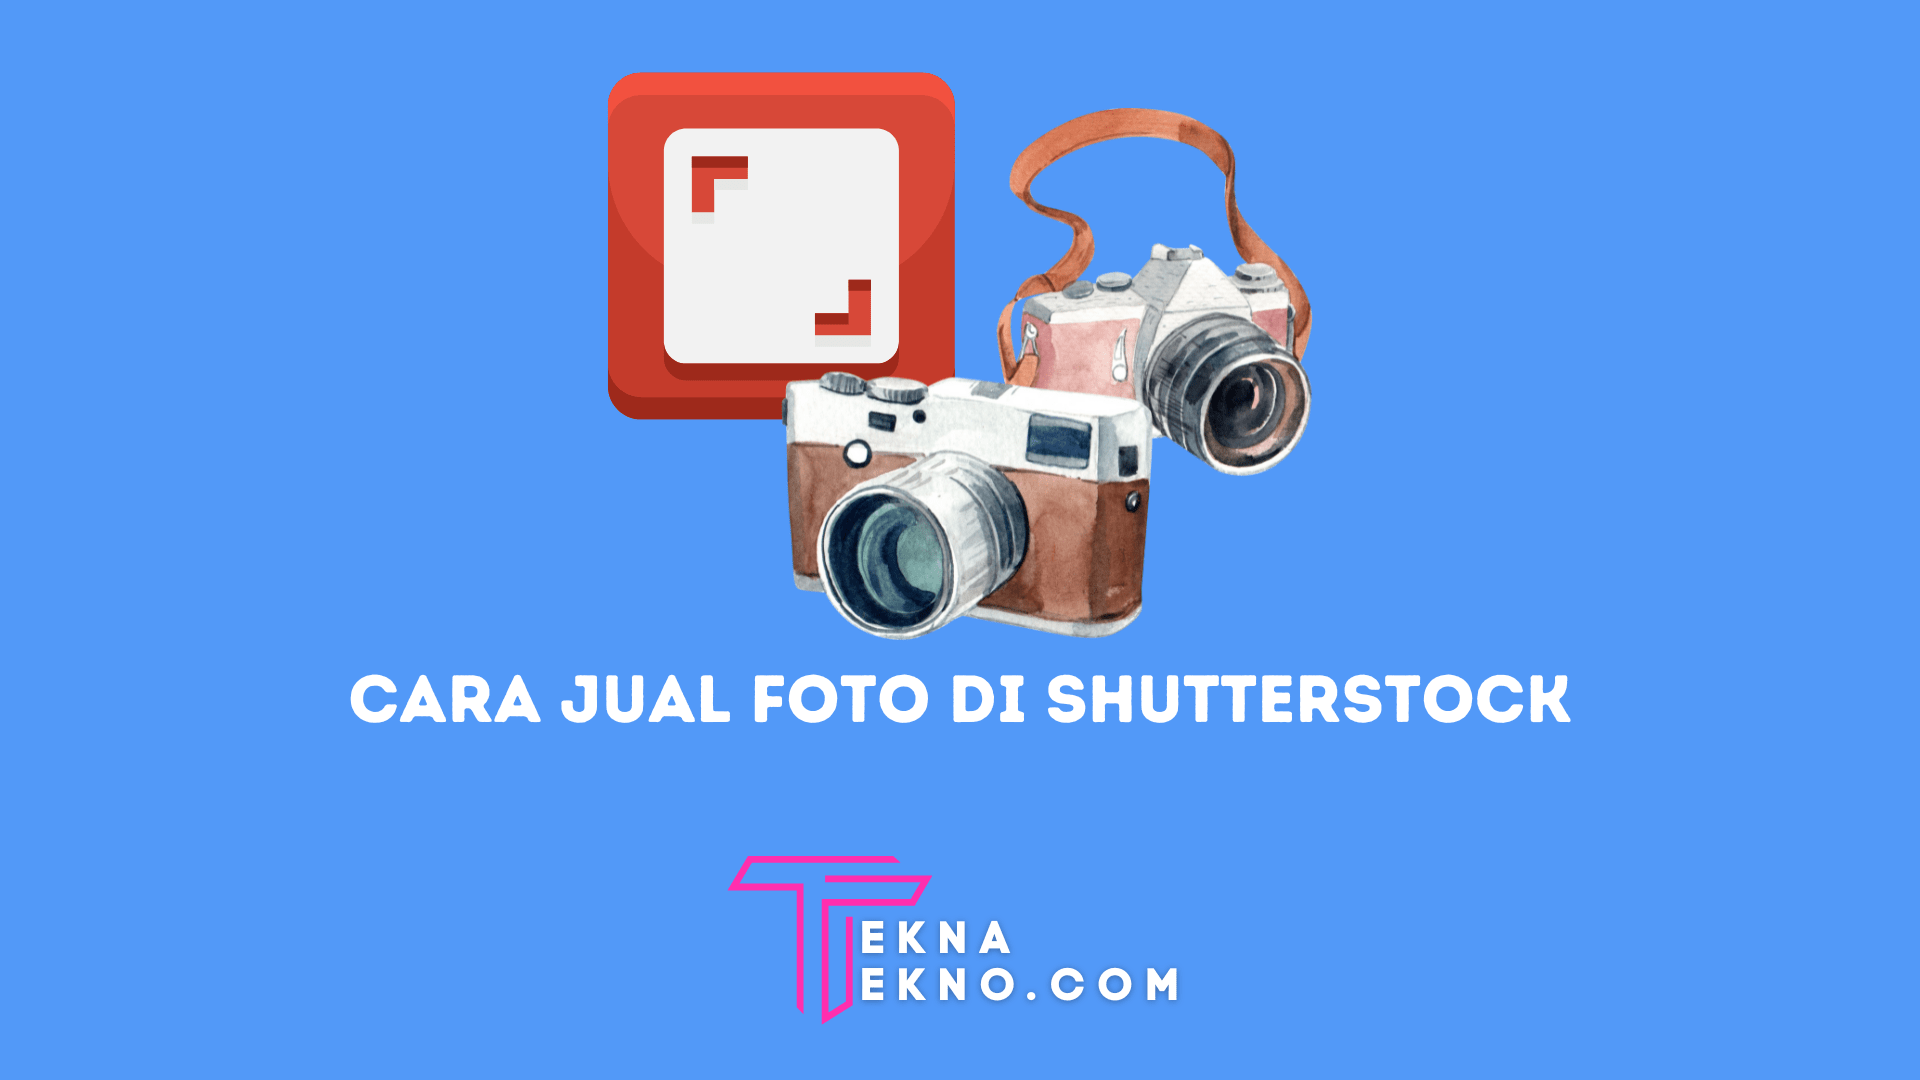 6 Cara Jual Foto di Shutterstock Terbaru, Ubah Hobi Jadi Bisnis Menguntungkan